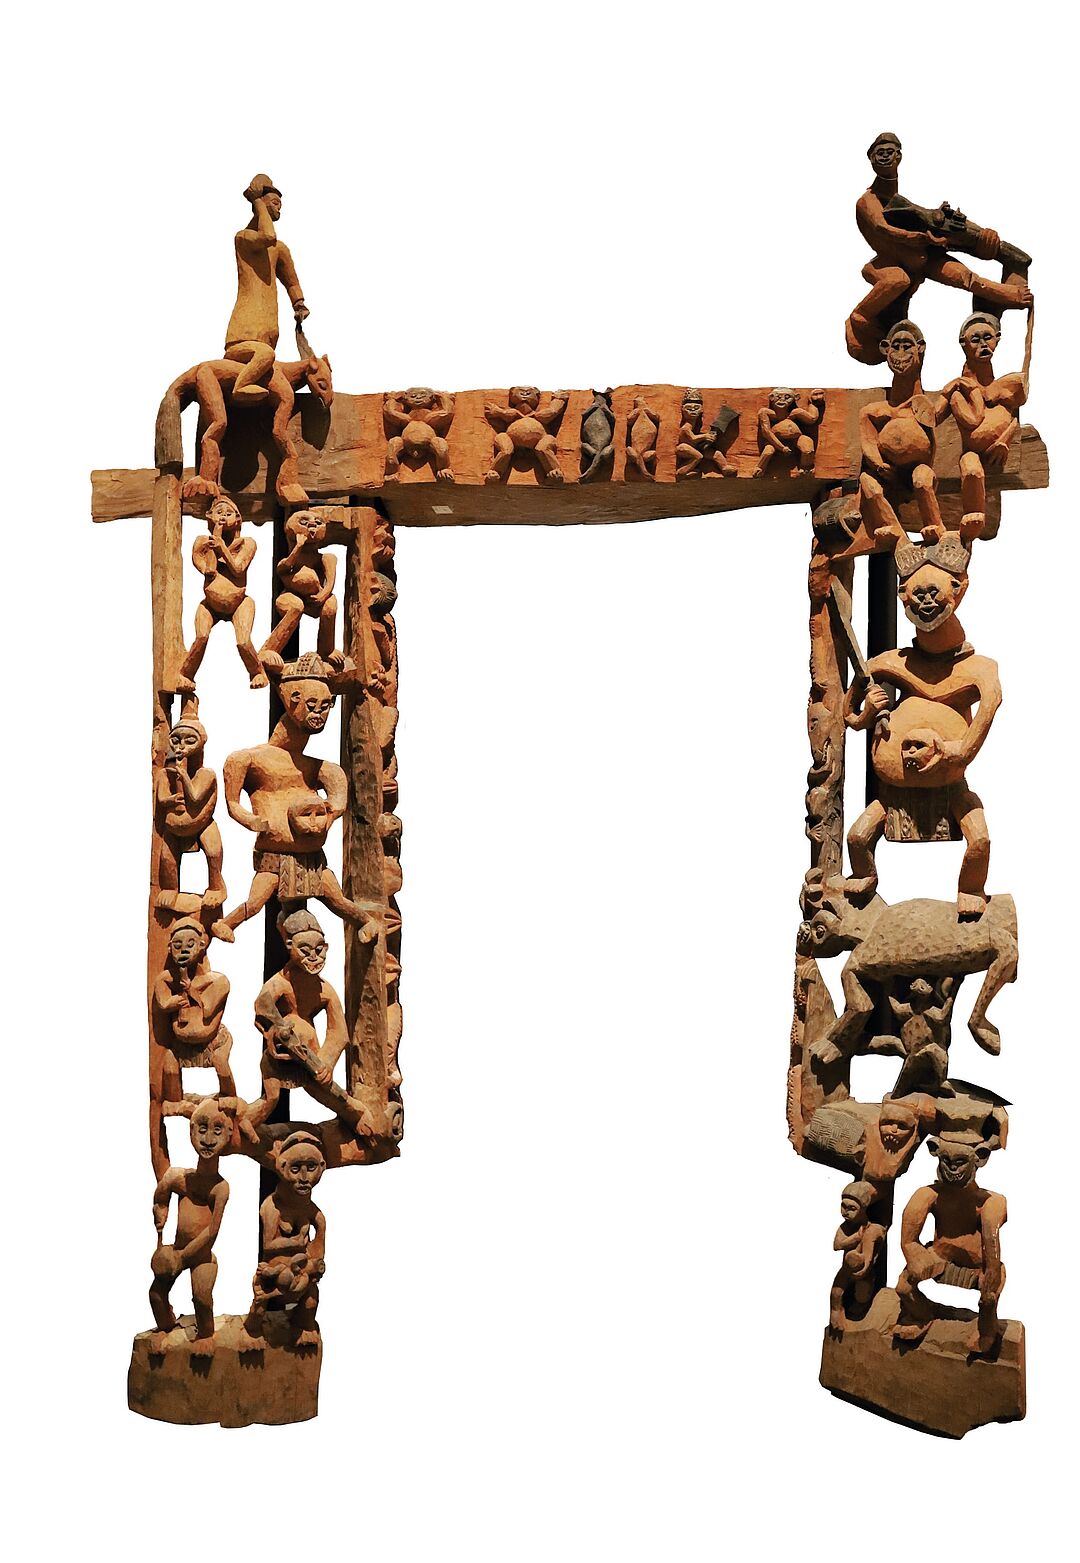 Kriegerische Aktionen seien hinsichtlich des Sammelns oft erfolgreicher als Ankäufe, stellten Offiziere unverblümt fest: Dieser Türrahmen aus Holz und Eisen, entstanden um 1900, ist ein Architekturelement aus Bati bei Bali und seit 1913 im Ethnologischen Museum Berlin.